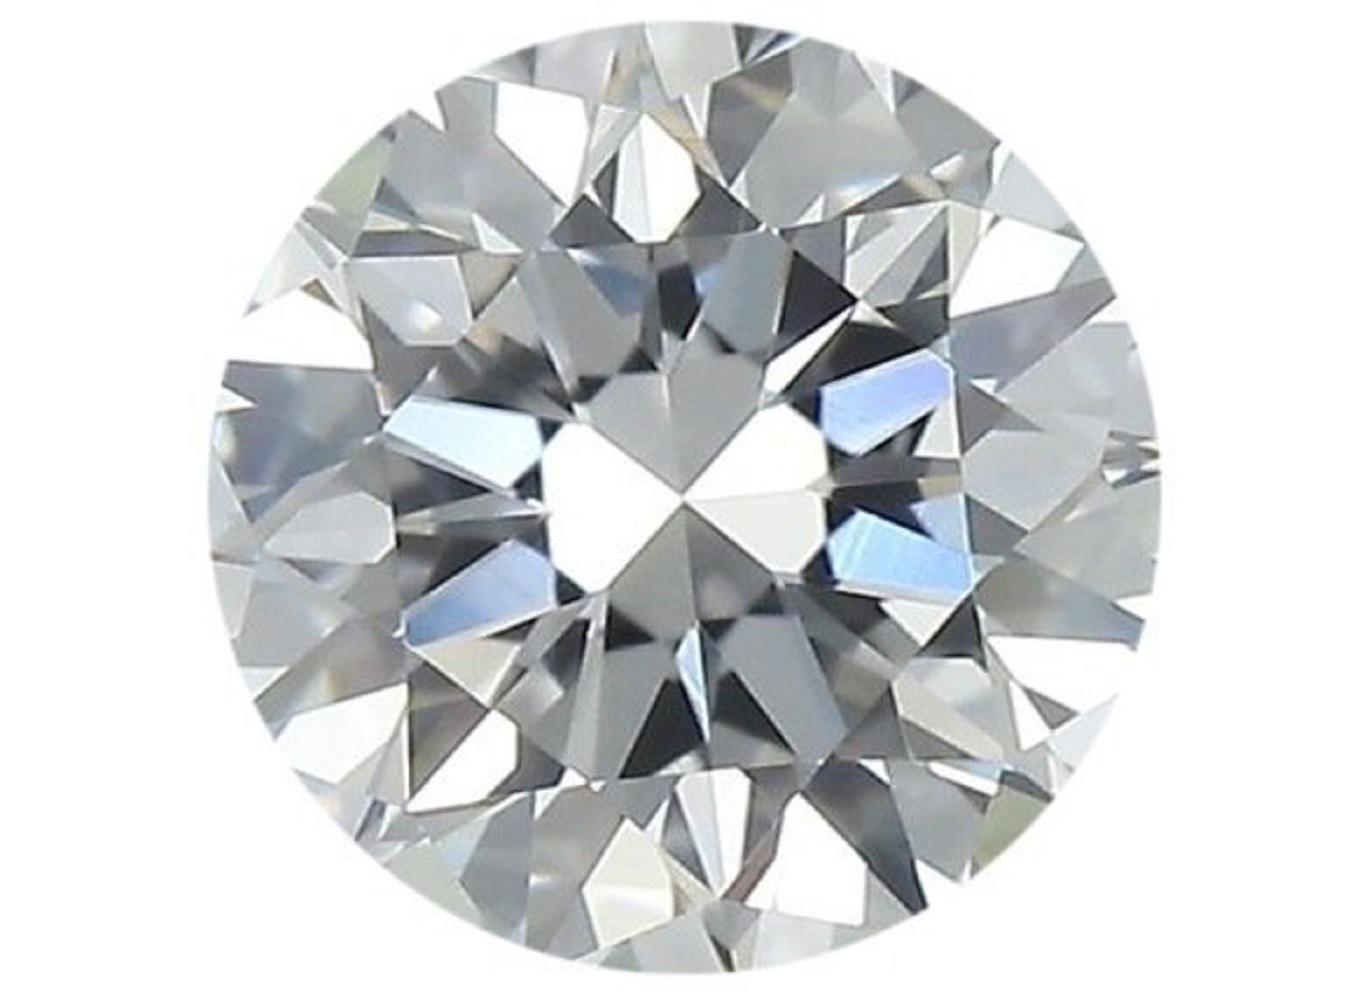 1 diamant rond brillant naturel étincelant de 1,04 carat D IF avec une excellente taille. Ce diamant est accompagné d'un certificat IGI et d'un numéro d'inscription au laser.

SKU : MKN-219
IGI 557255266